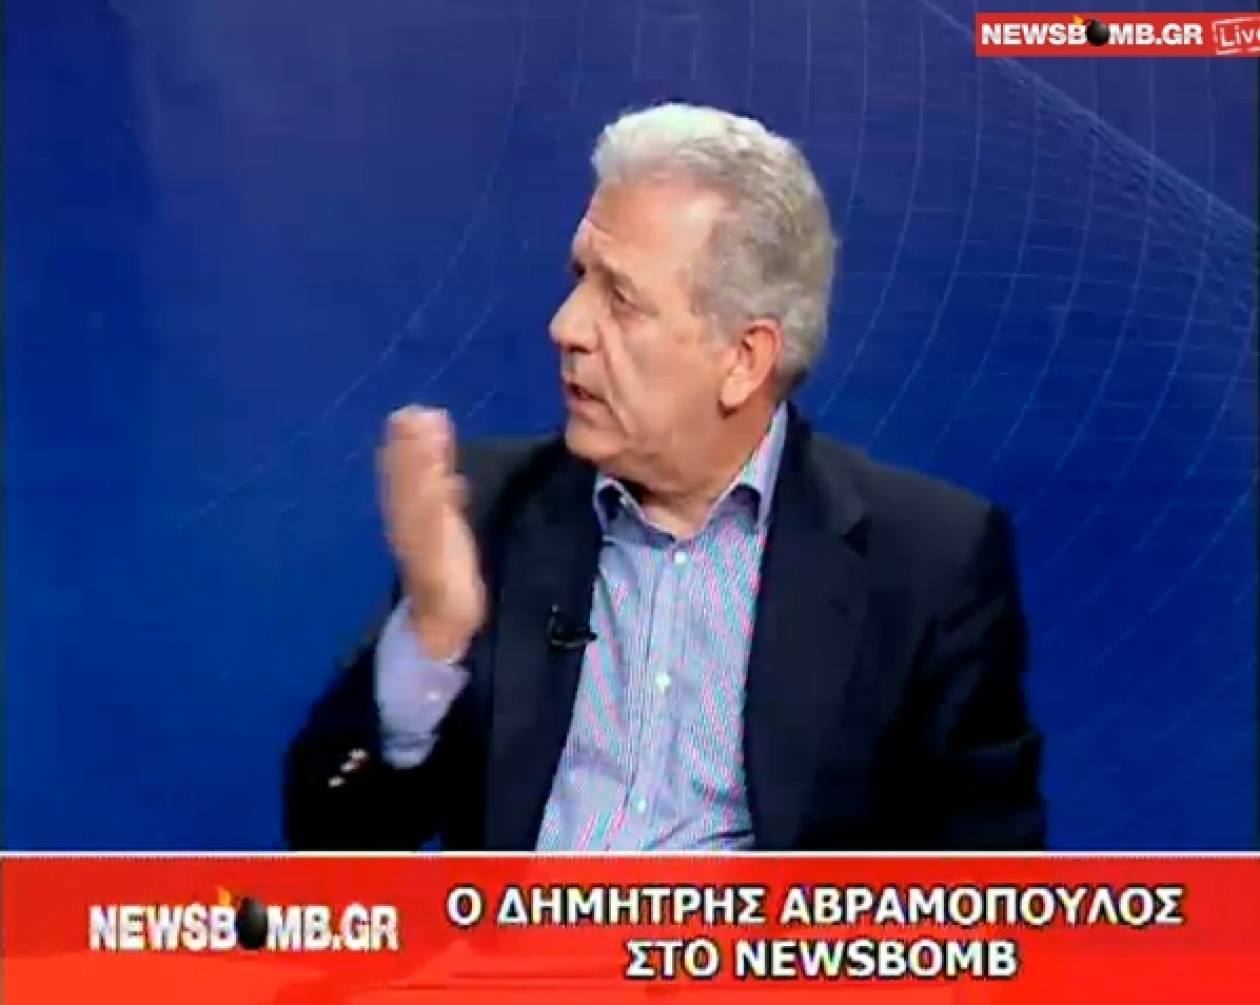 Δ. Αβραμόπουλος:Πρέπει να κόψουμε το λαιμό μας να φτιάξουμε κυβέρνηση